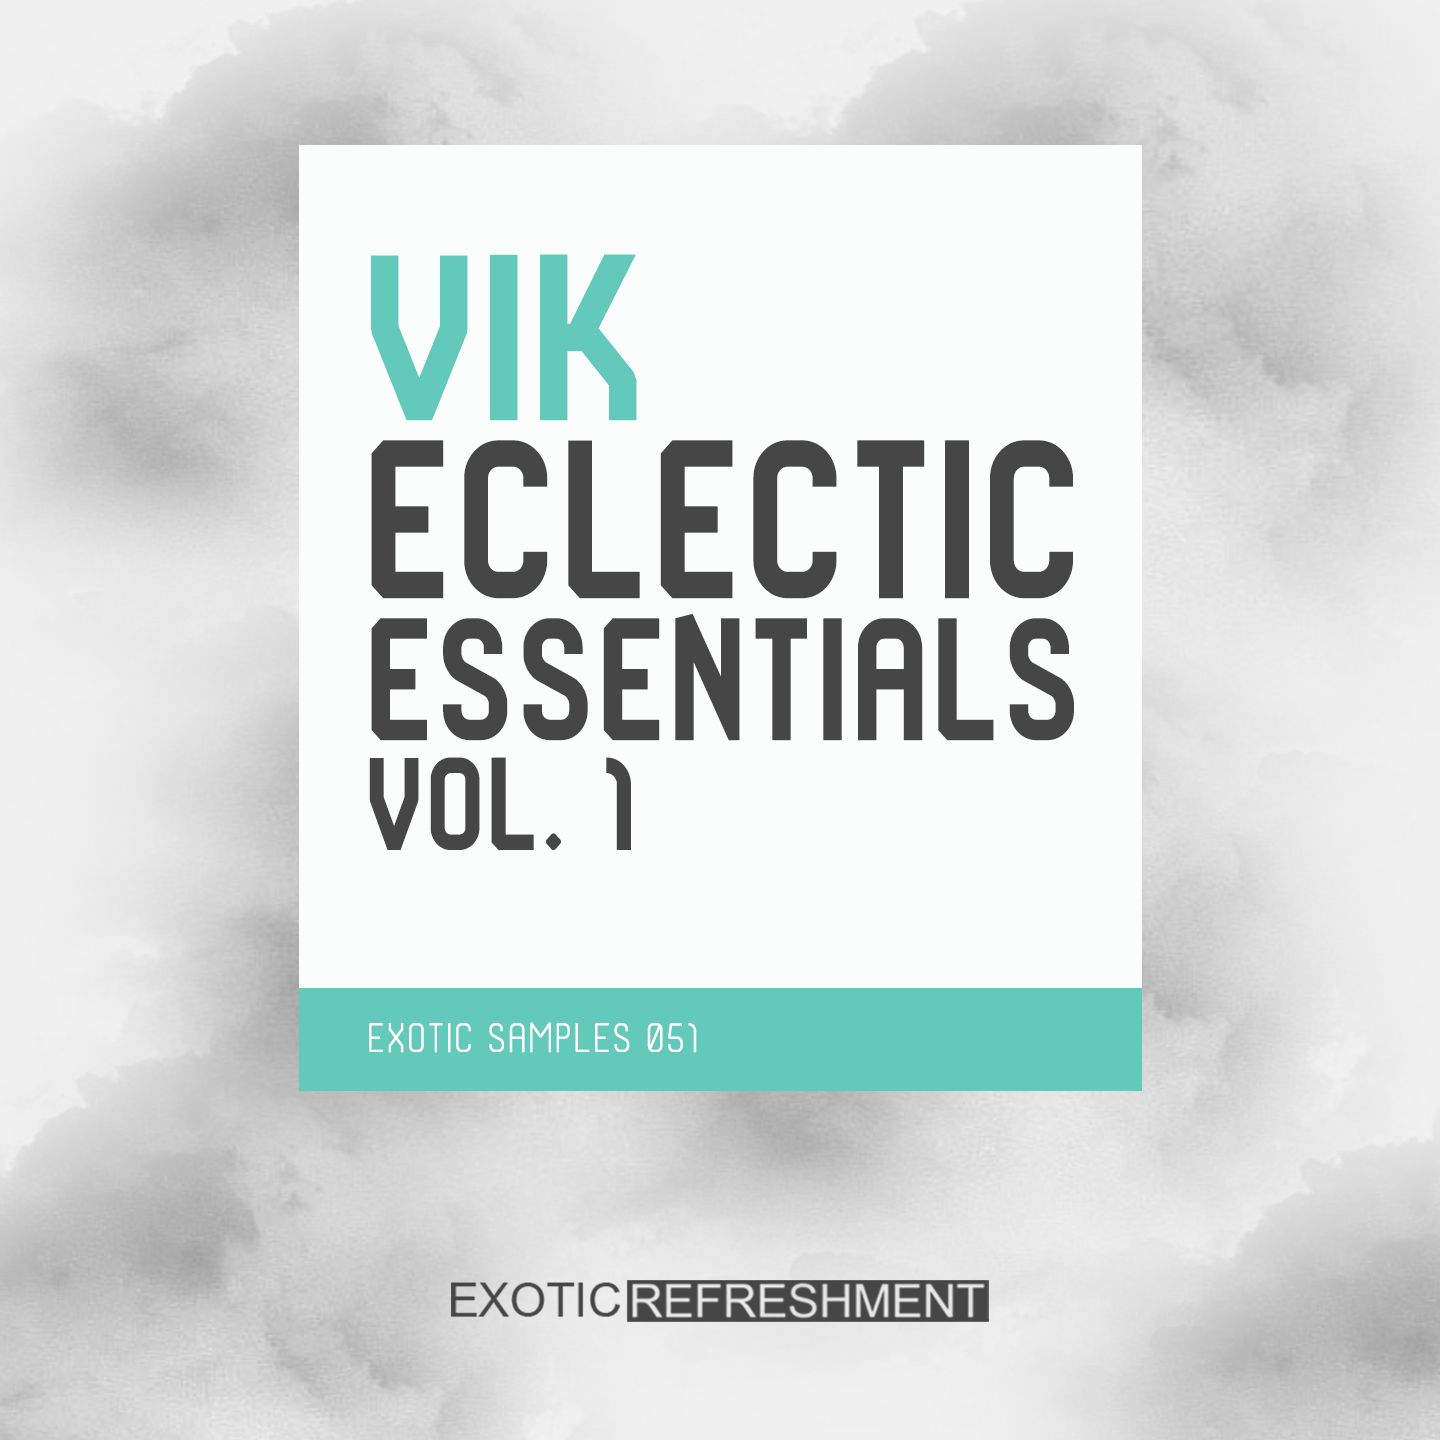 VIK Eclectic Essentials vol. 1